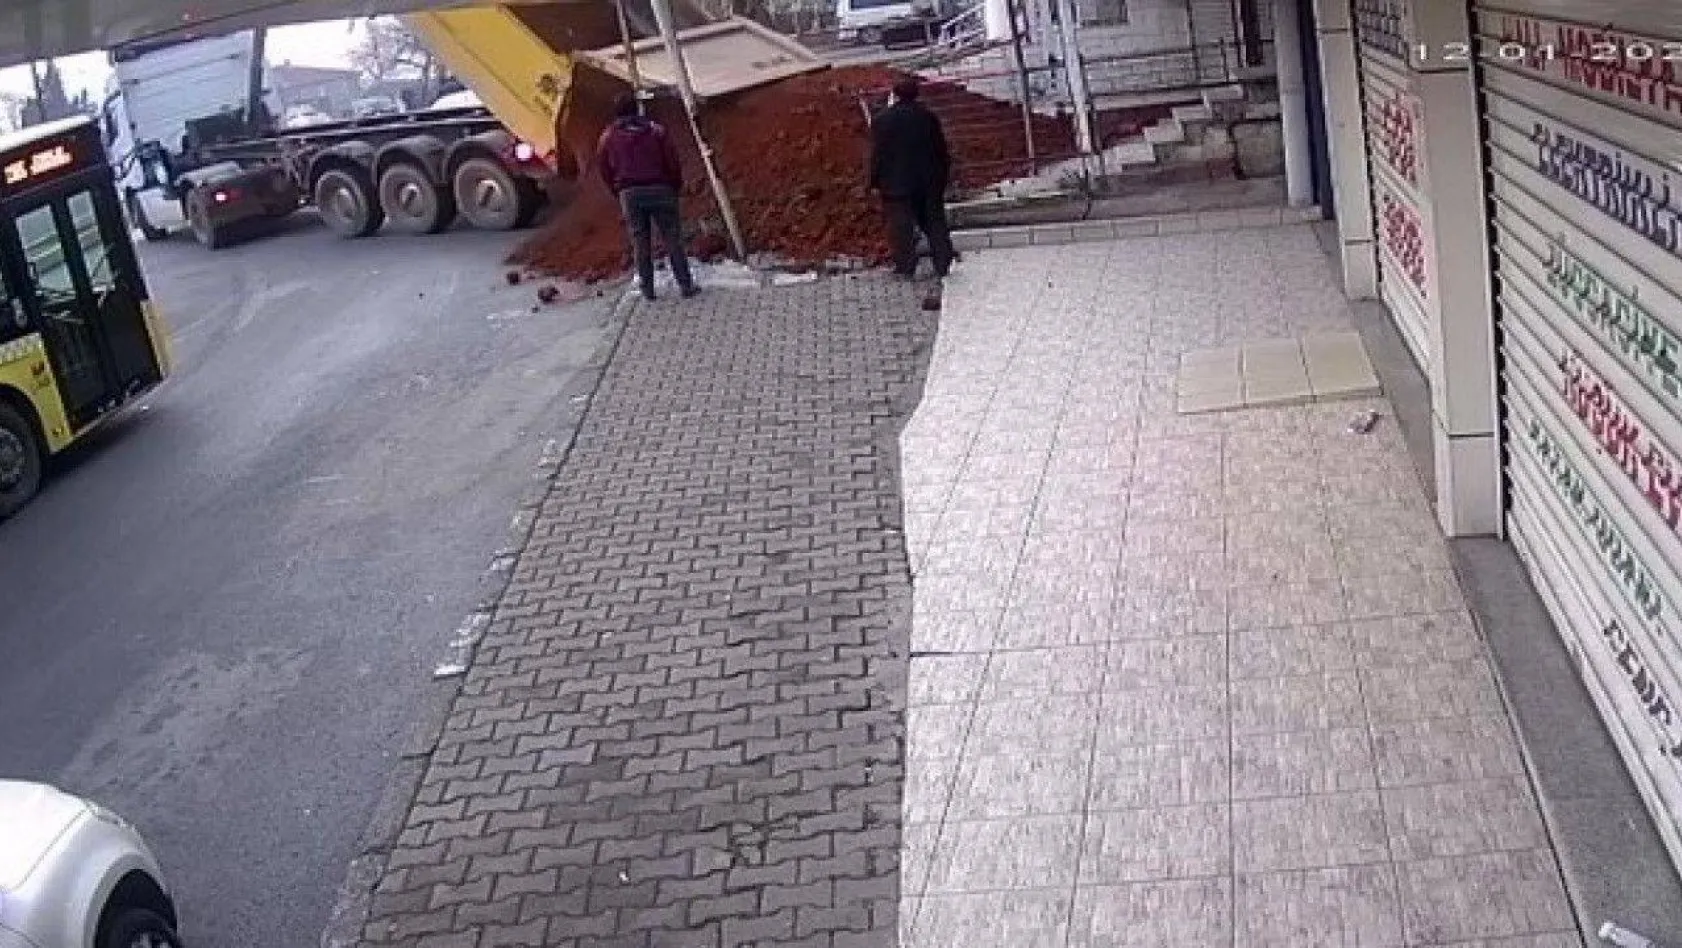 Sultanbeyli'de kiracısından fazlan kira isteyen dükkan sahibi, dükkanın önüne kamyonla kum döktürdü